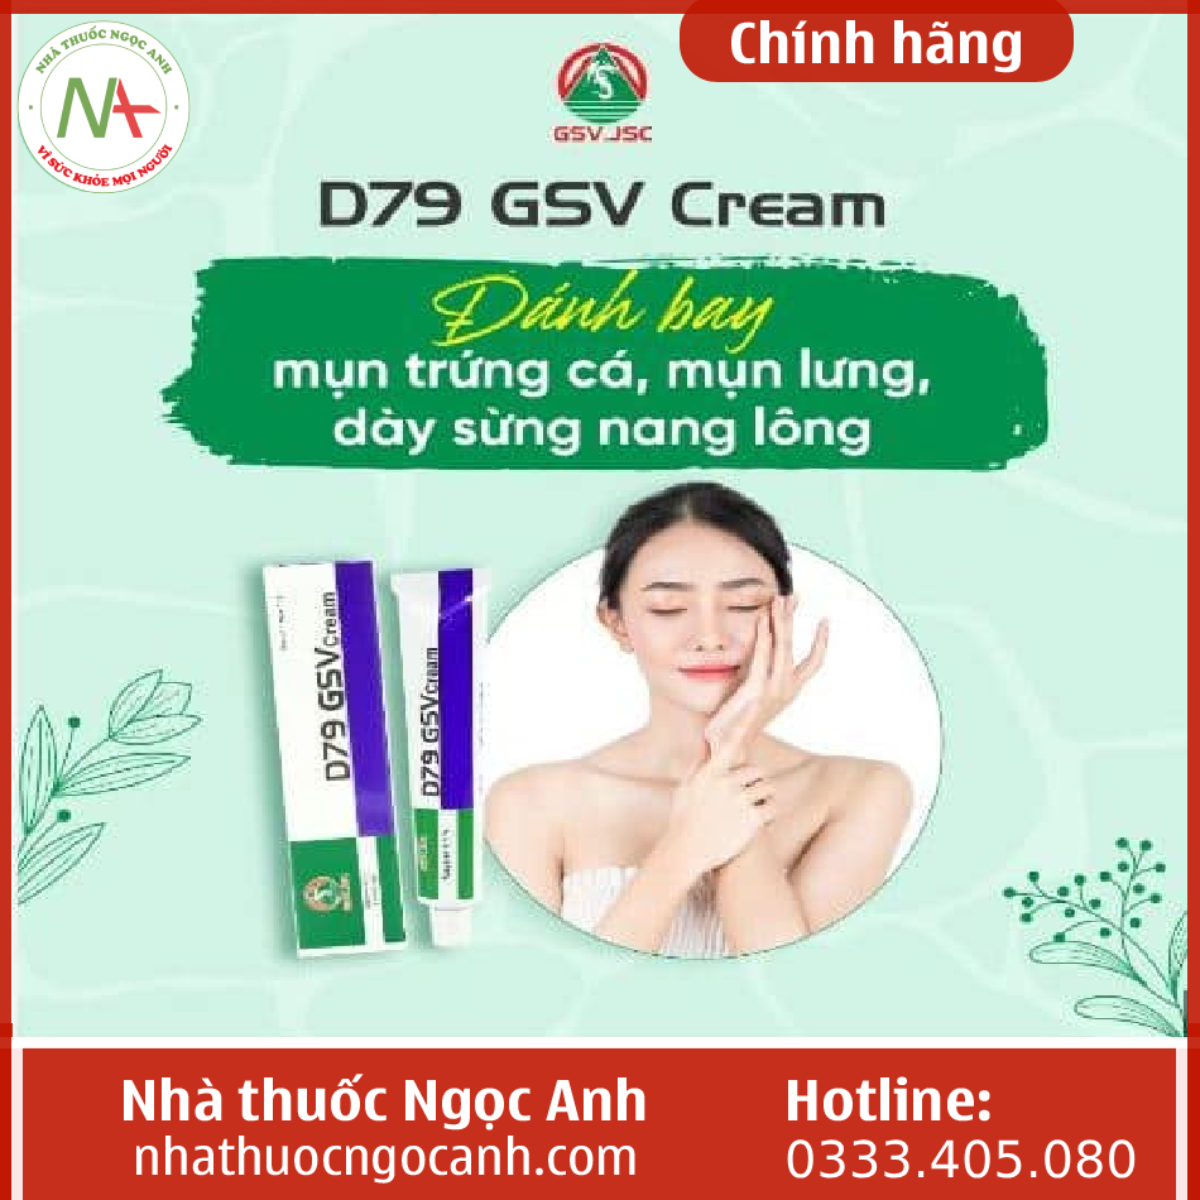 D79 GSV Cream